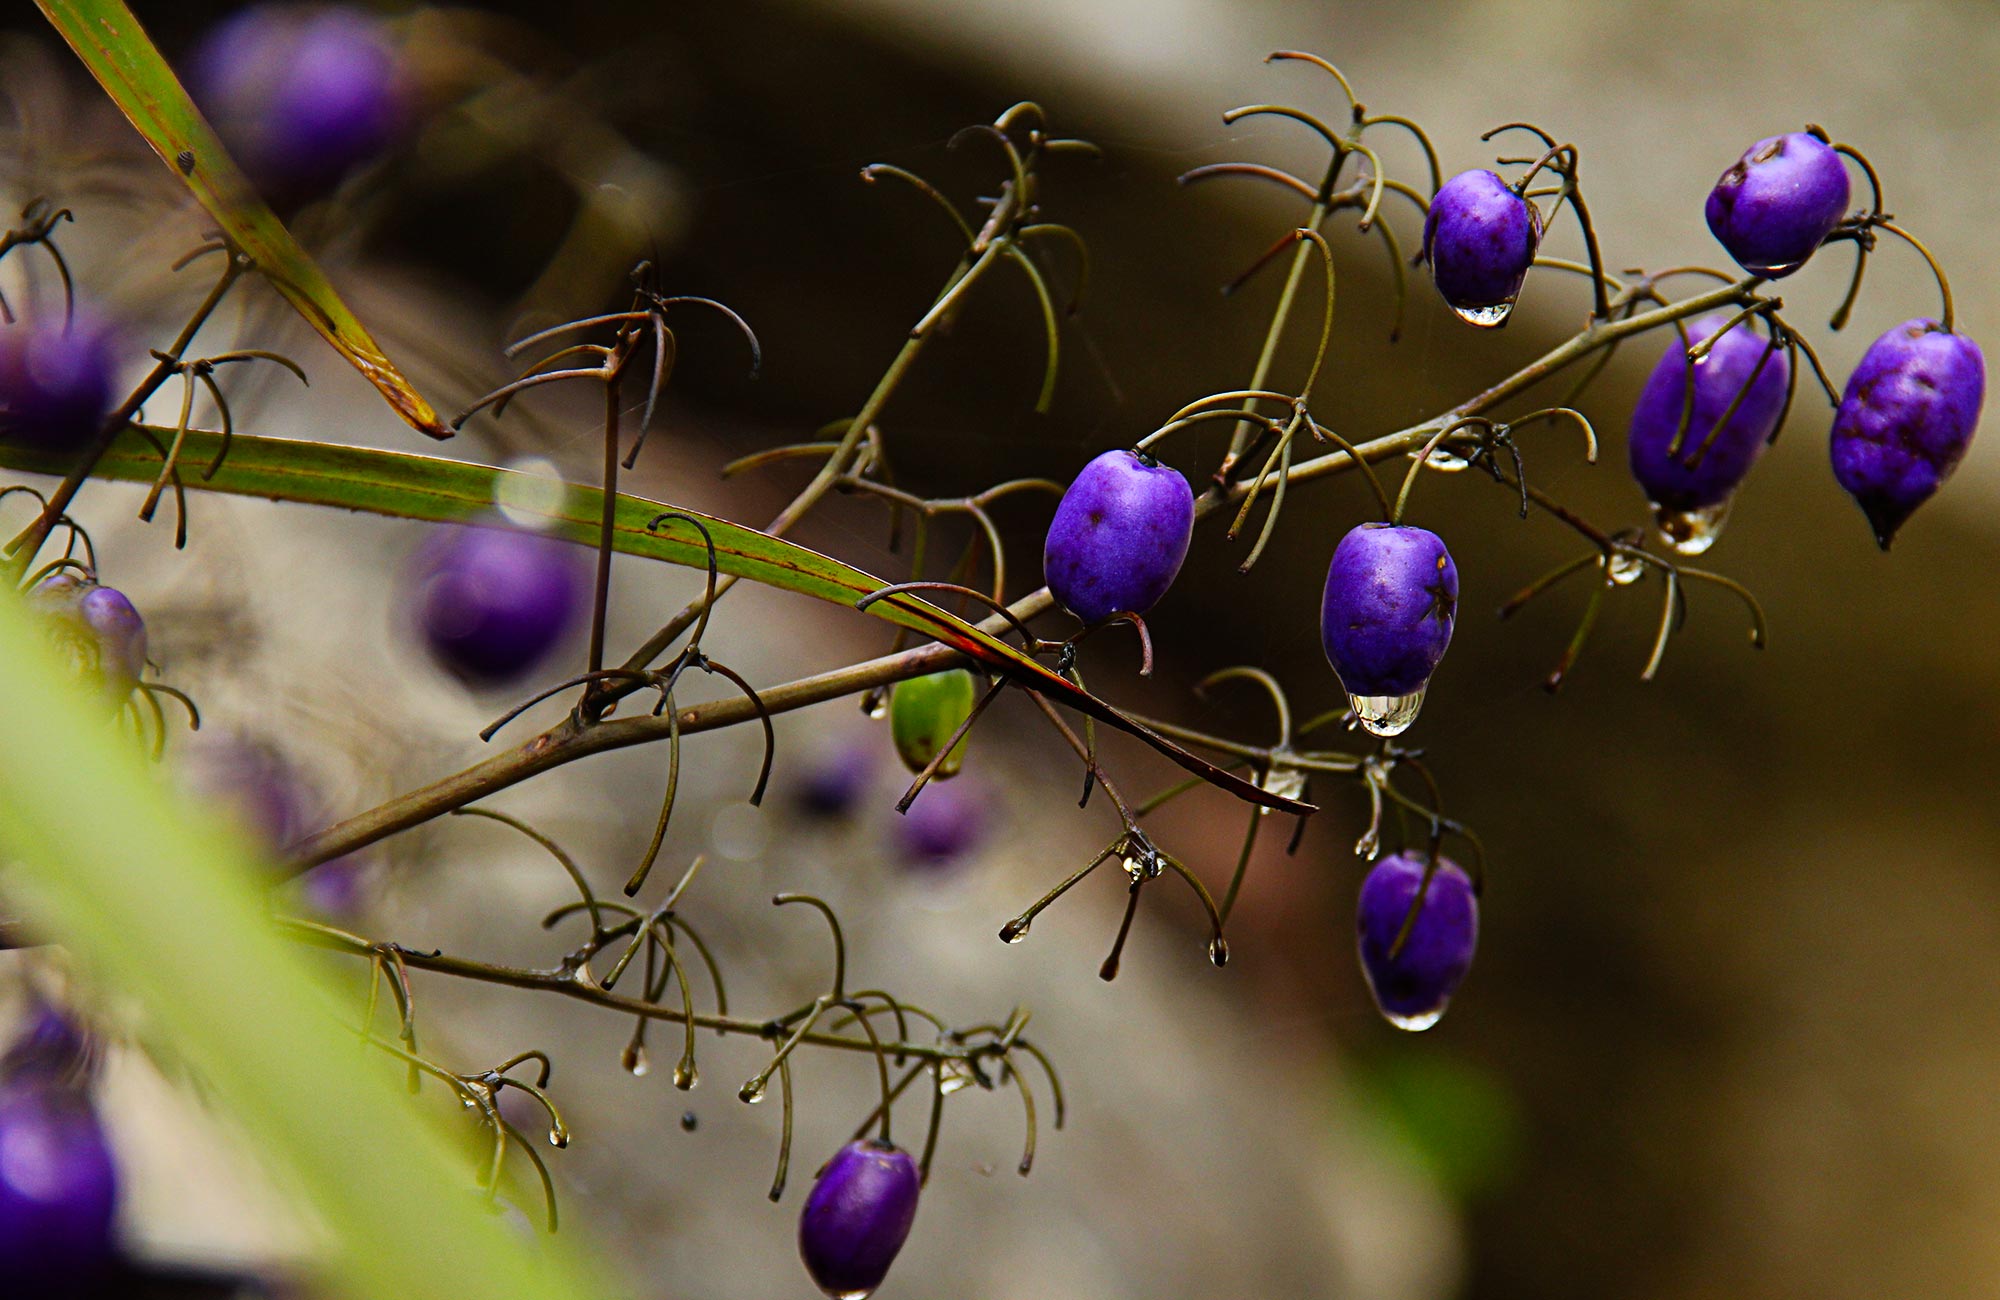 Purple berries. Photo:Debby McGerty